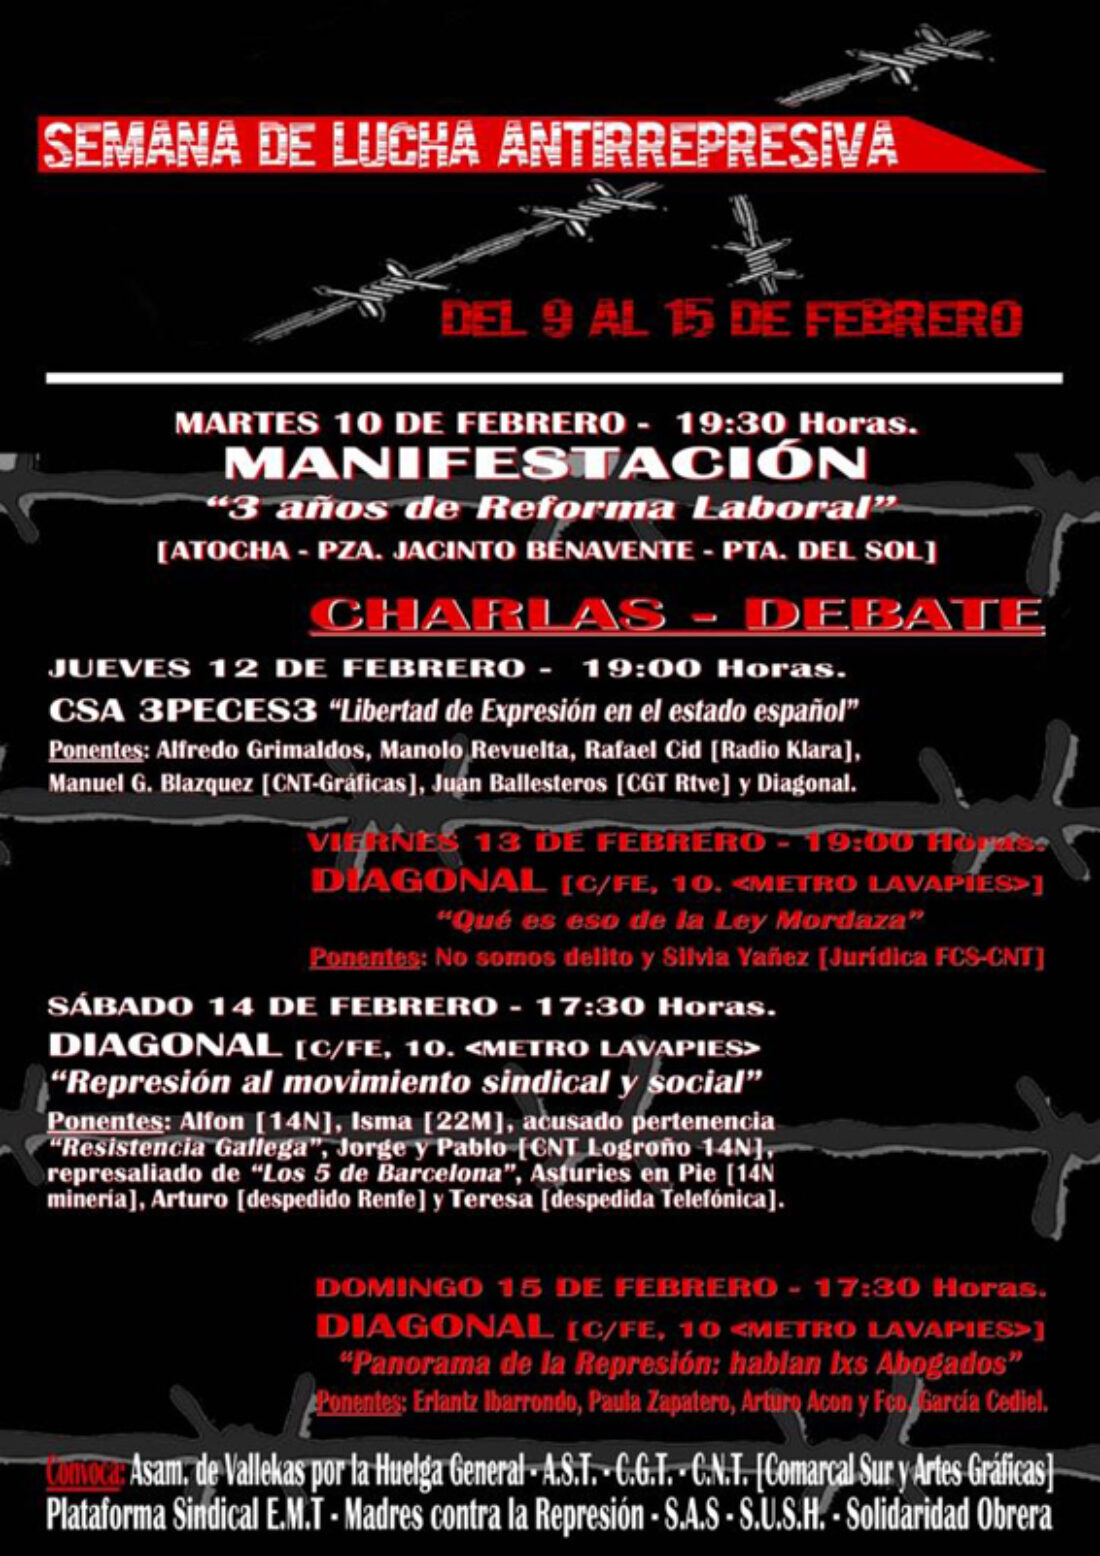 Semana Antirrepresiva #Madrid 9/2 al 15/2 2015